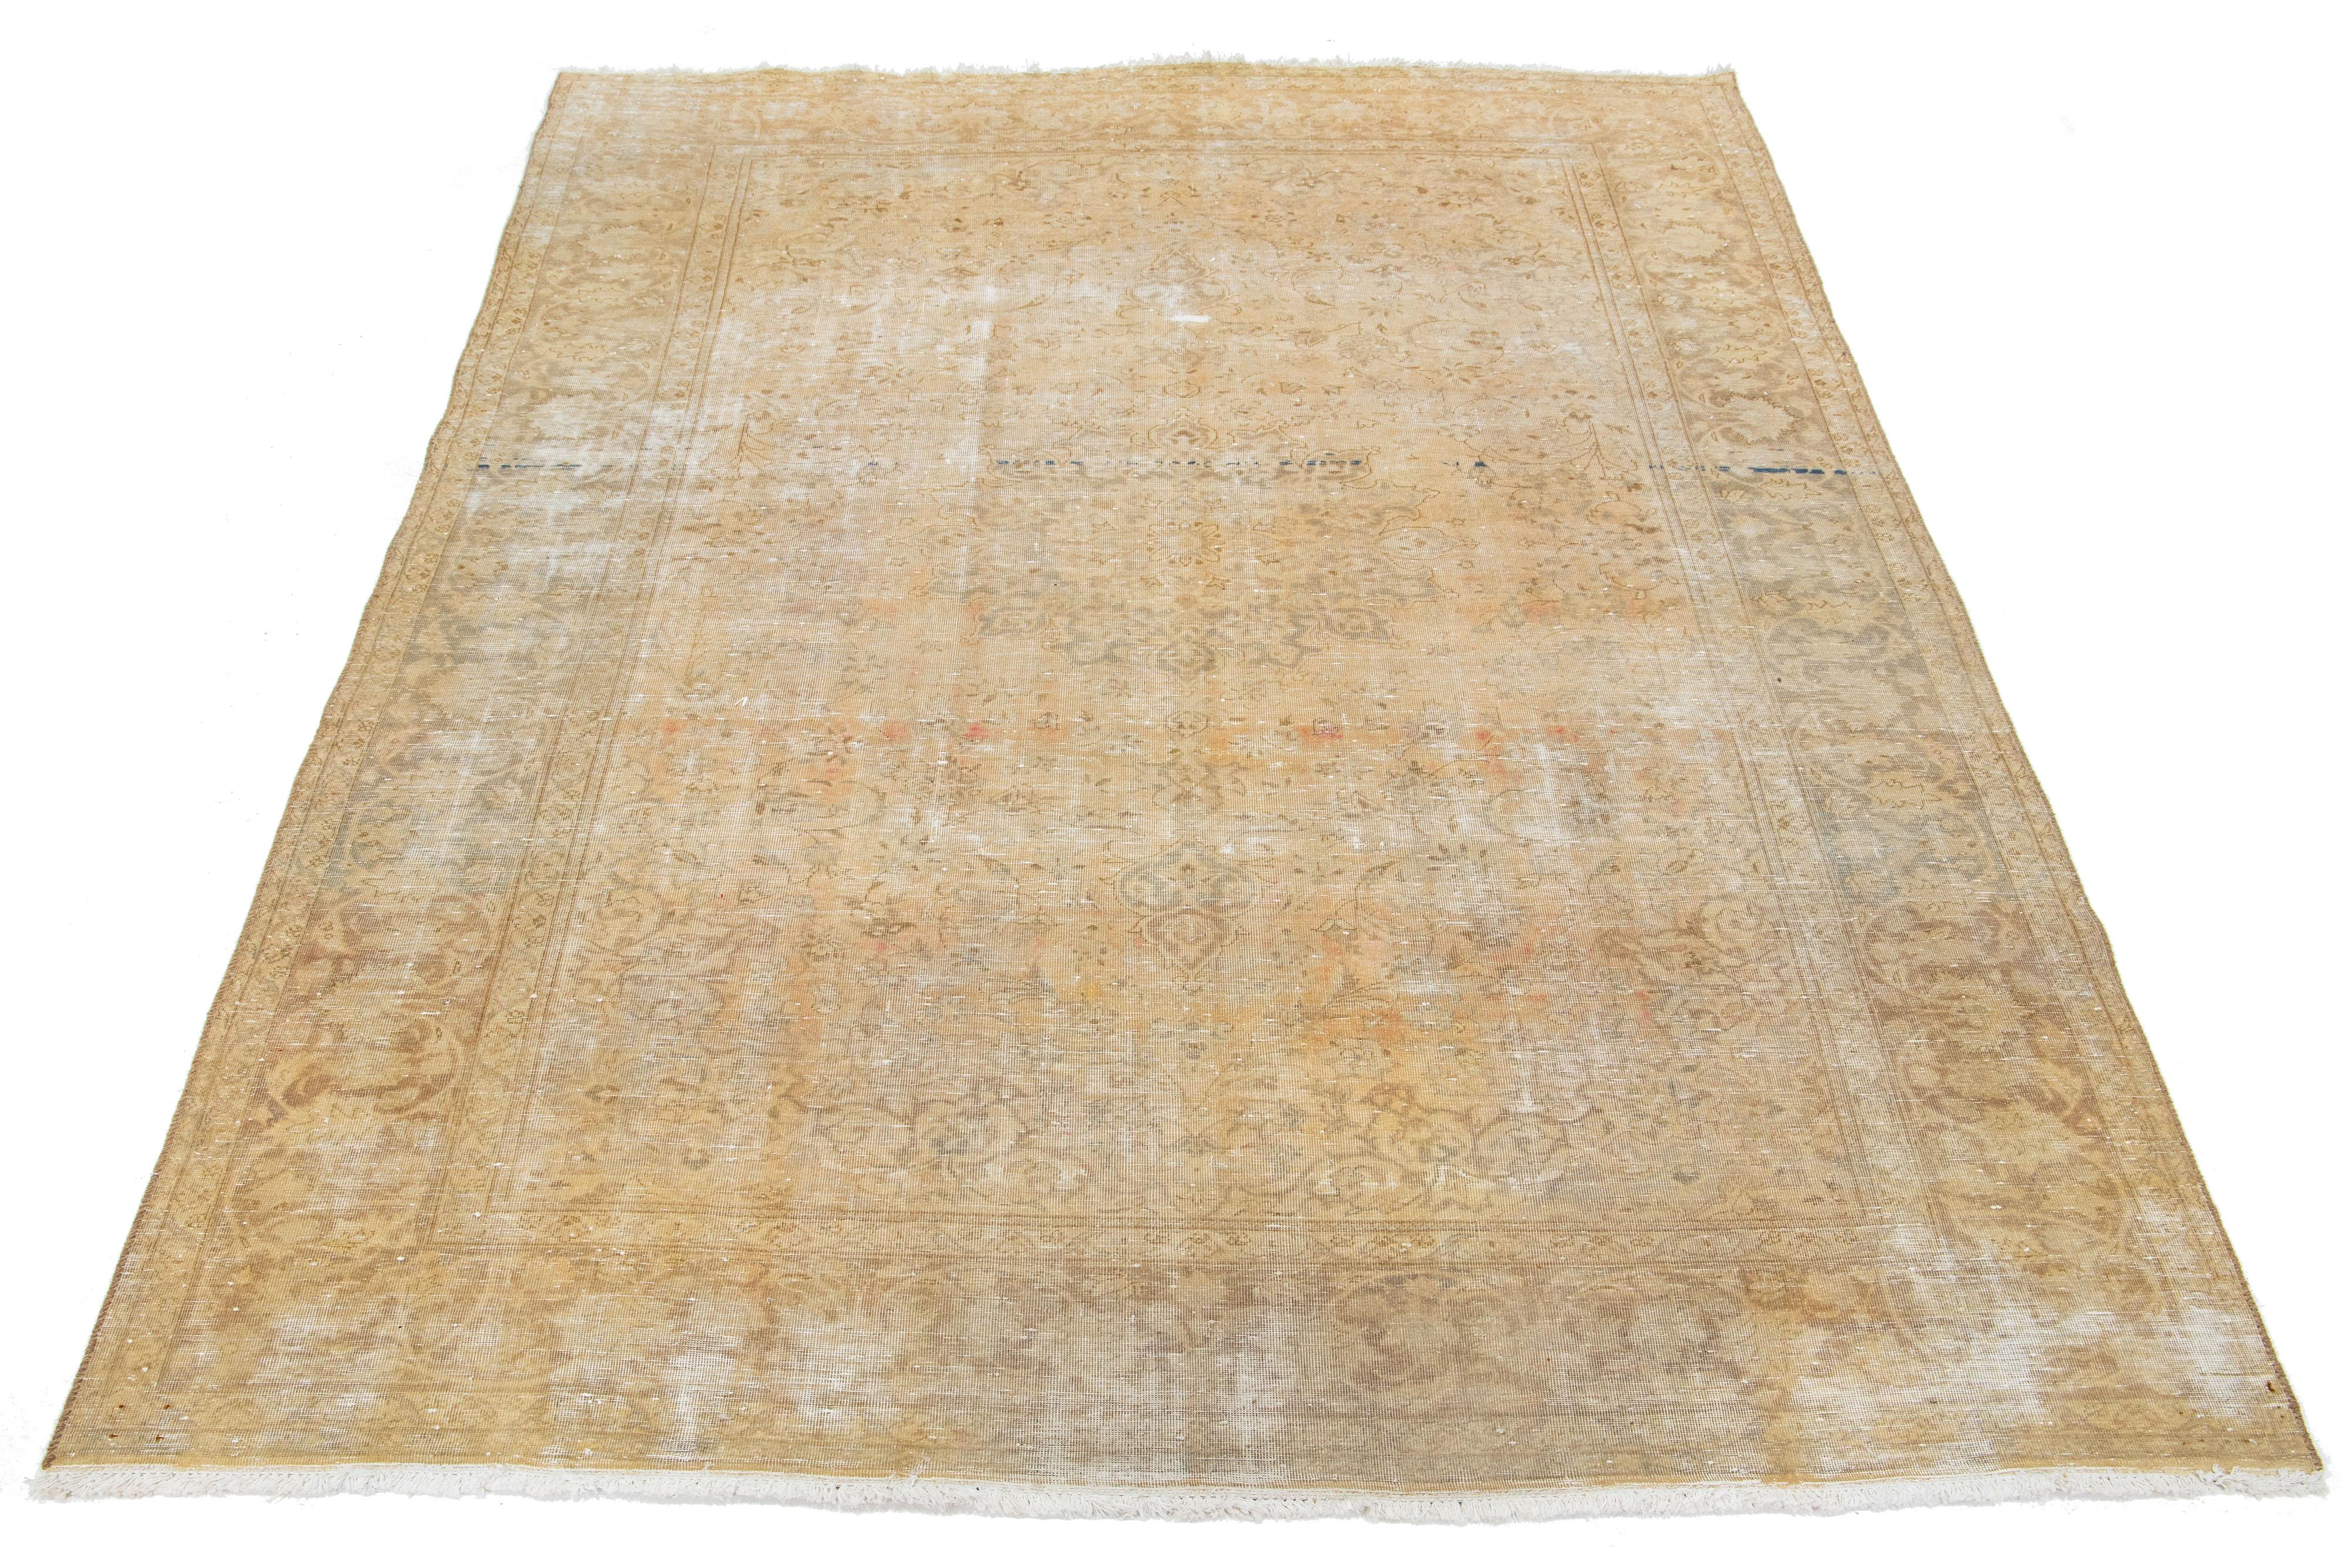 Schöner Vintage Mahal handgeknüpfter Wollteppich mit einem beigen Farbfeld. Dieser Perserteppich hat graue und braune Farbtöne, die sich durch das florale Motiv ziehen.

Dieser Teppich misst 7' x 10'6